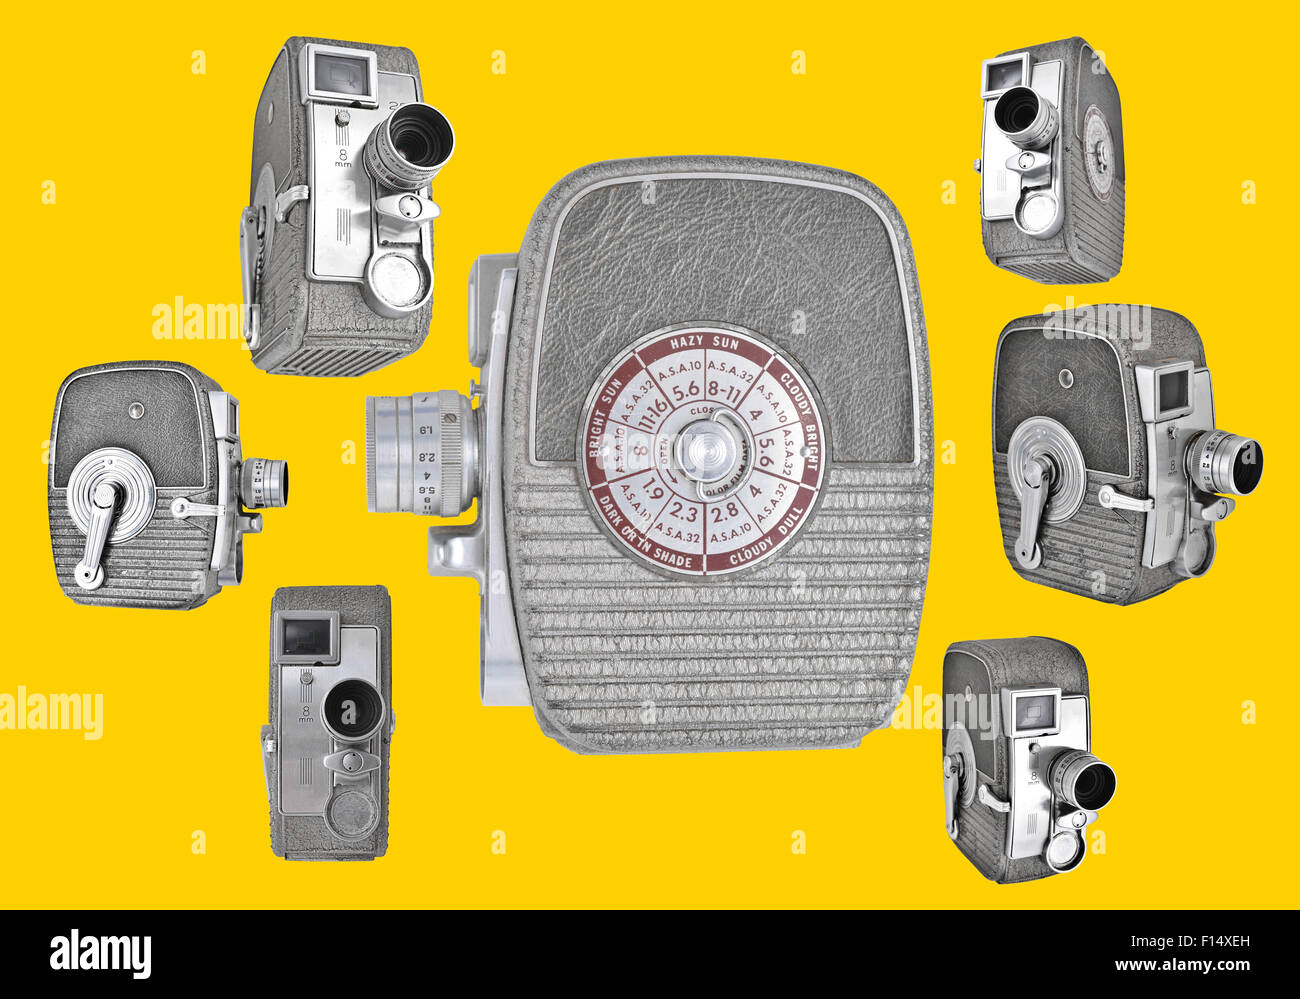 8mm caméras dans des angles différents dans un layot rétro Banque D'Images